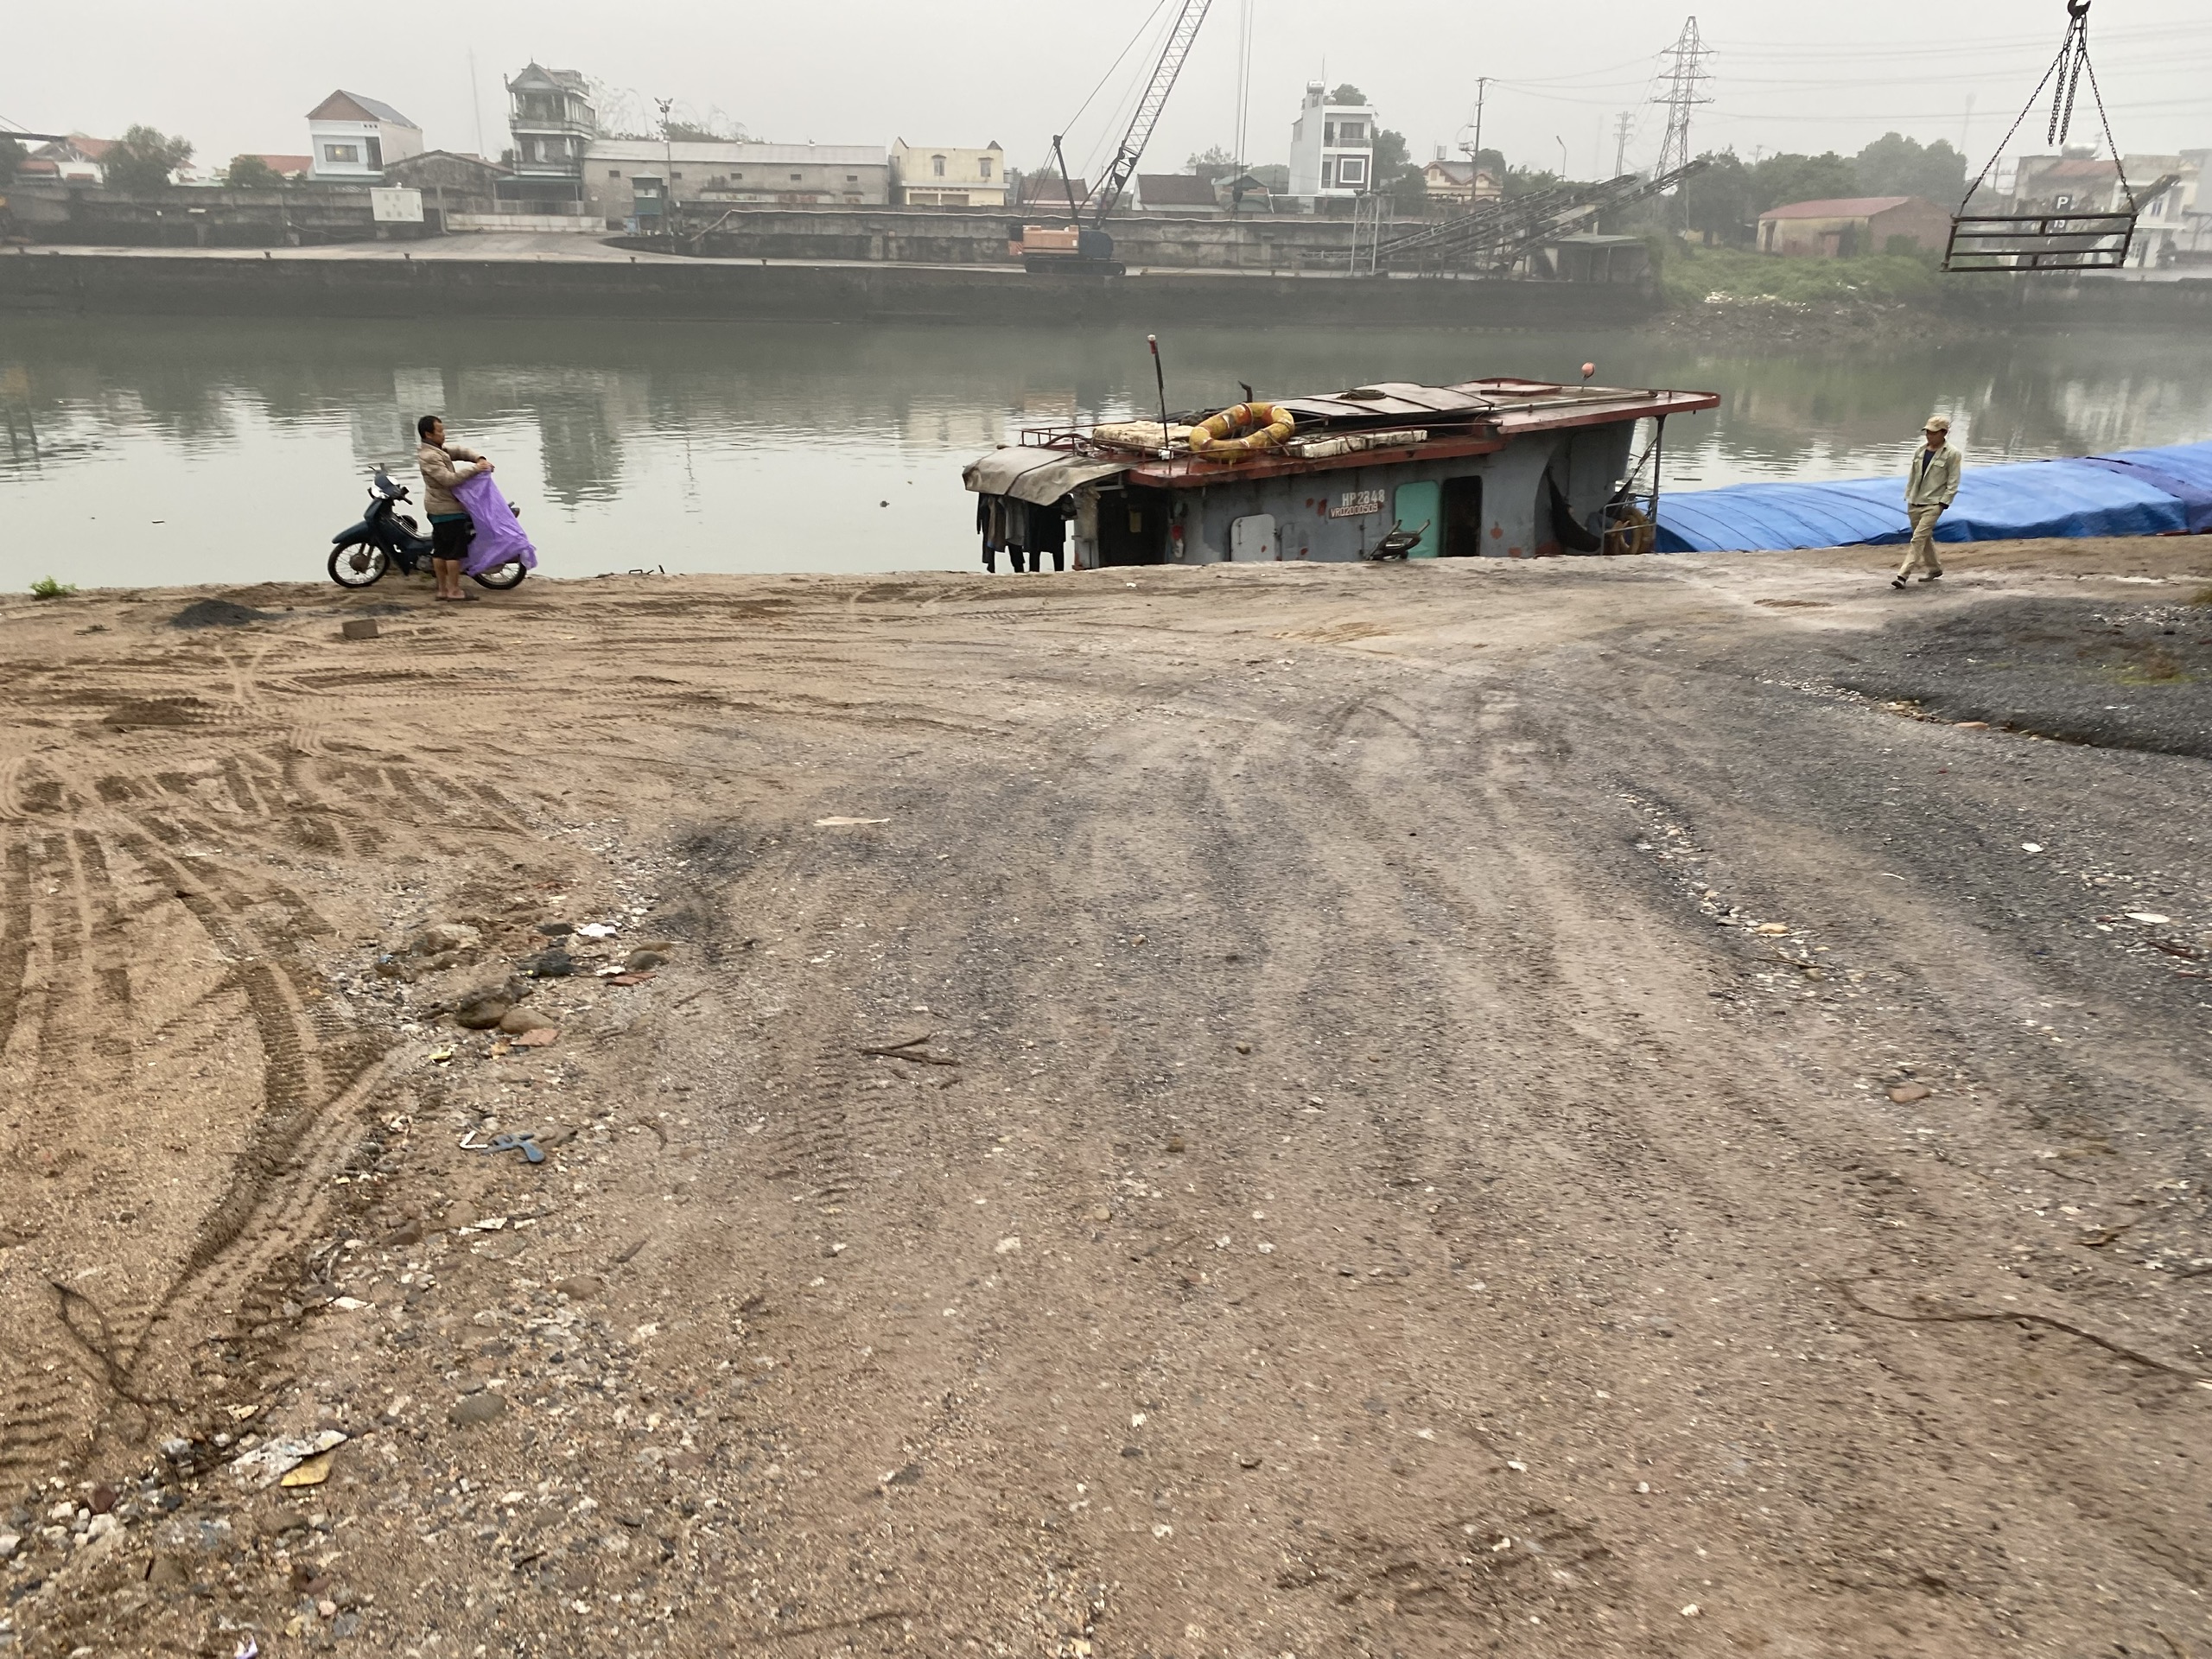 Quảng Ninh: Nhiều bến bãi trái phép ven sông, xã lúng túng hướng xử lý- Ảnh 2.